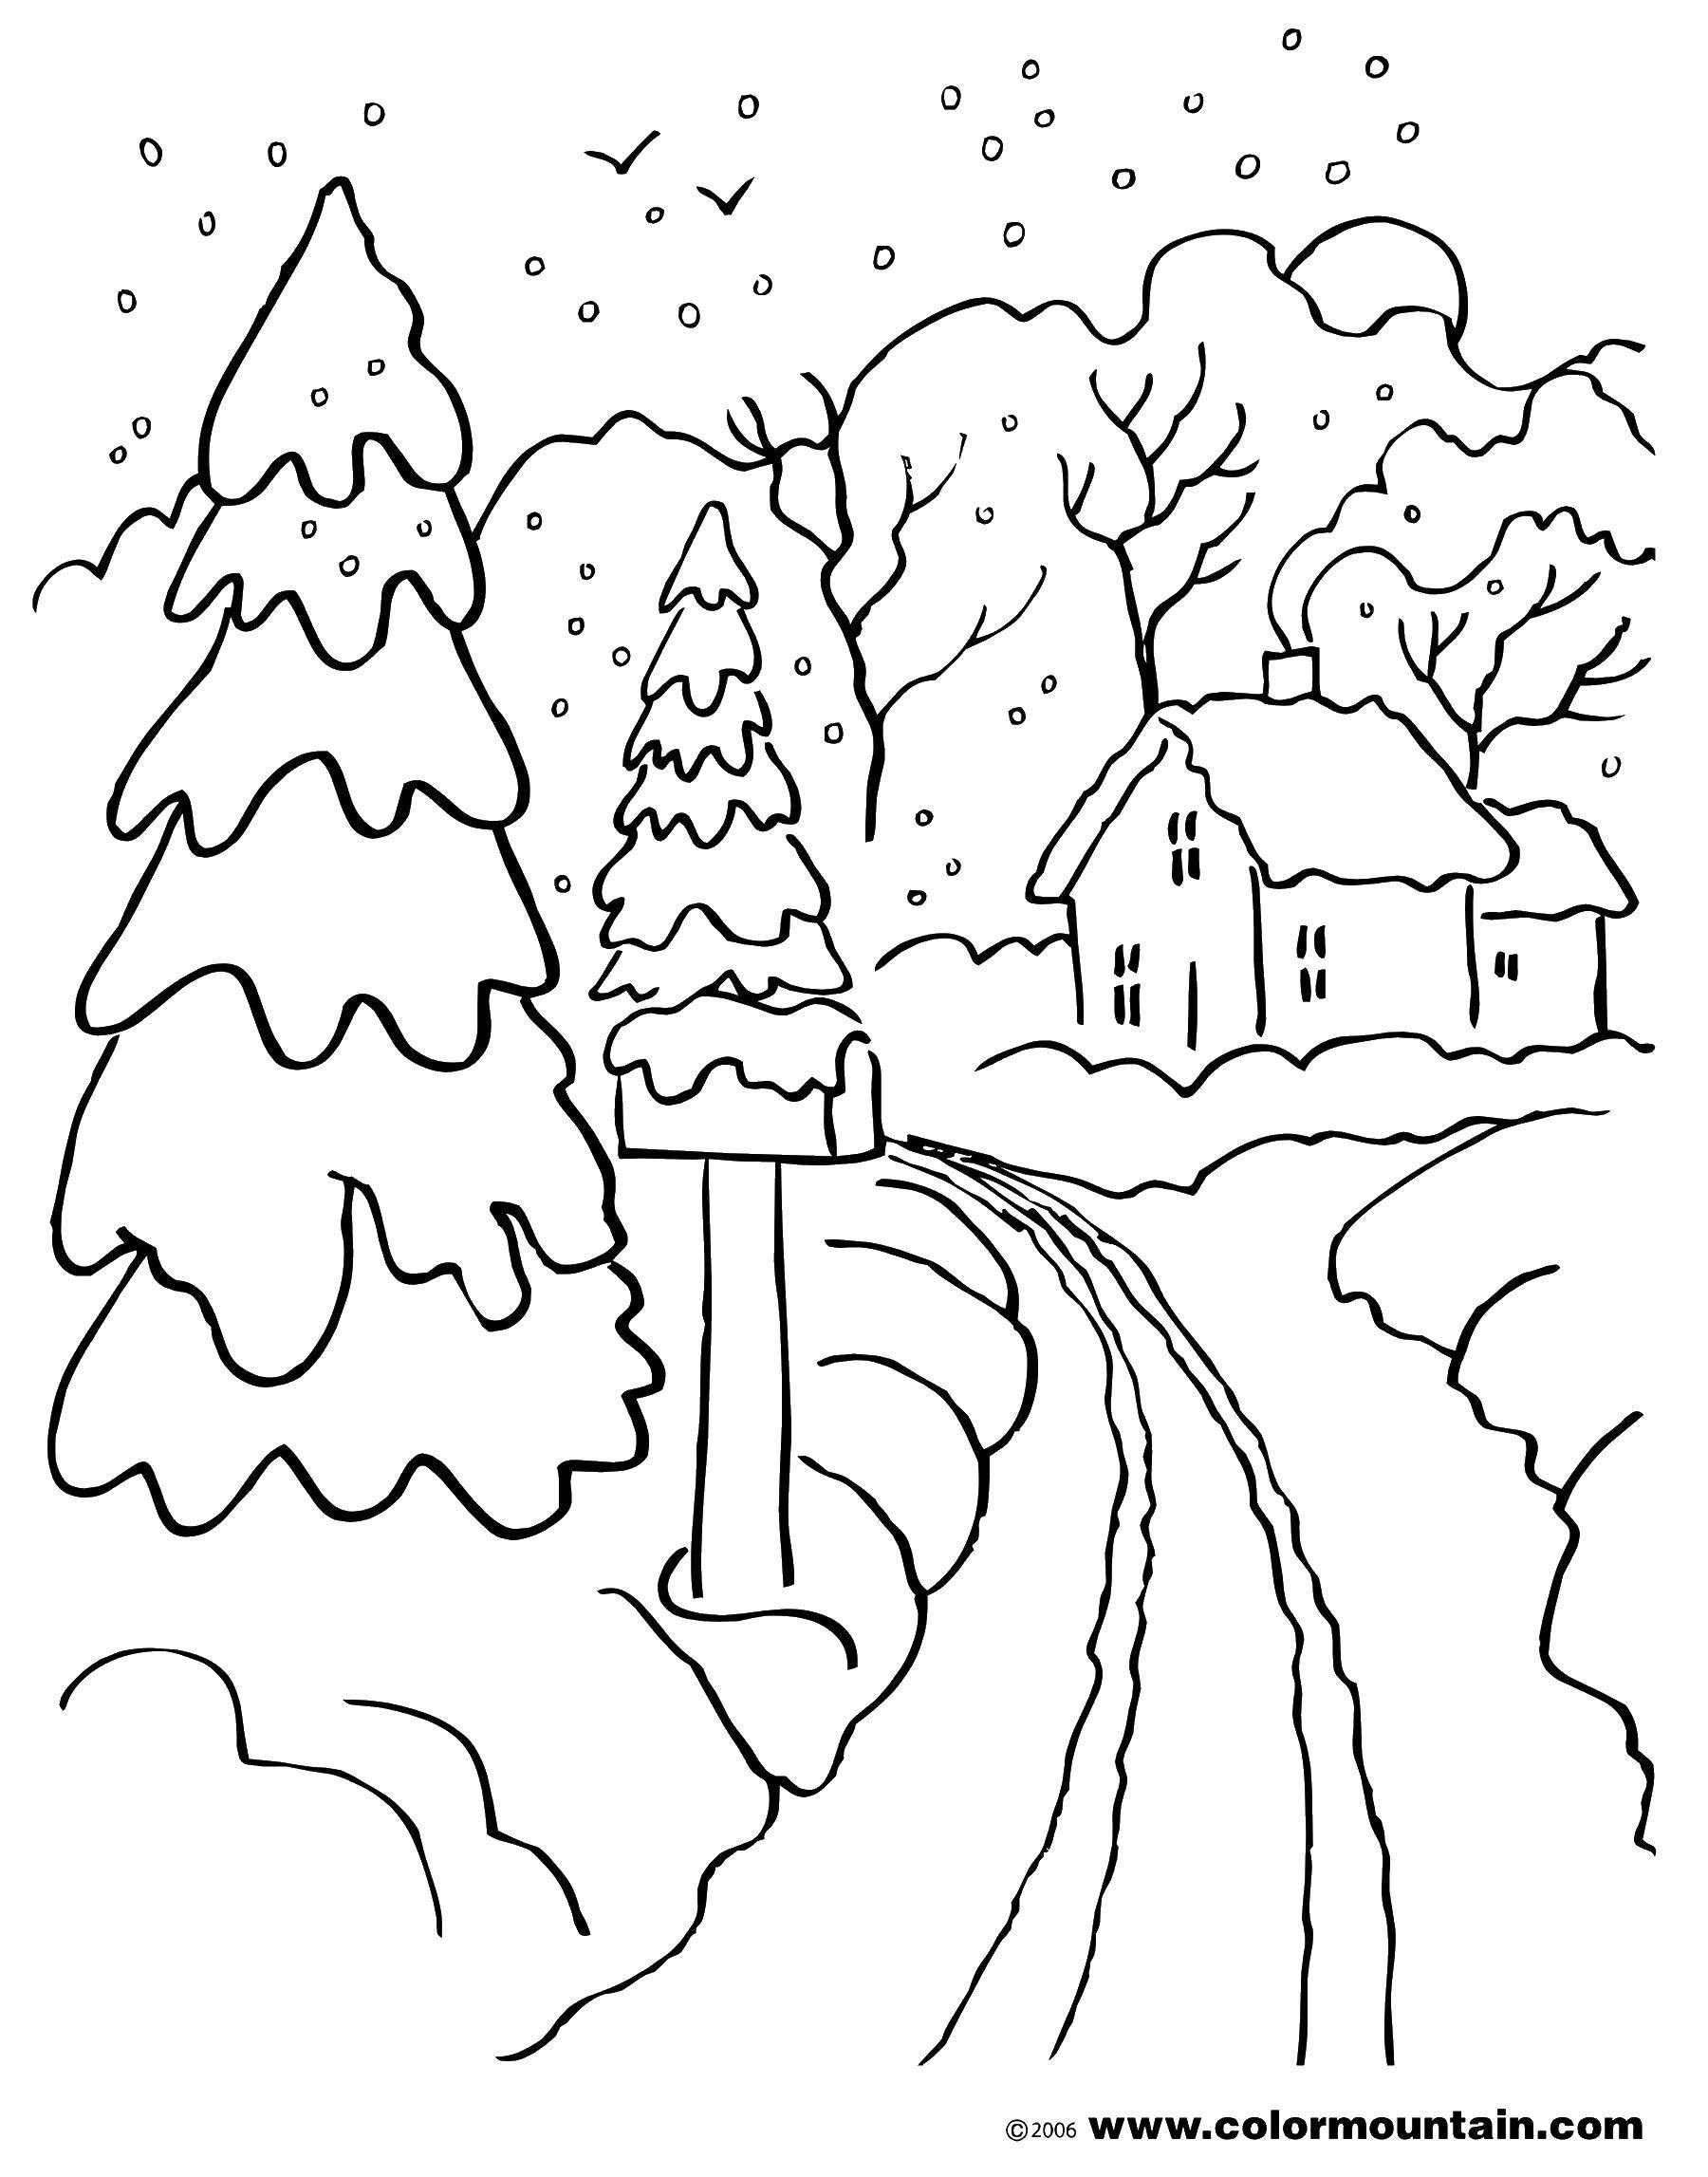 Опис: розмальовки  Снігопад у містечку. Категорія: розмальовки. Теги:  снігопад, сгег, будиночки.